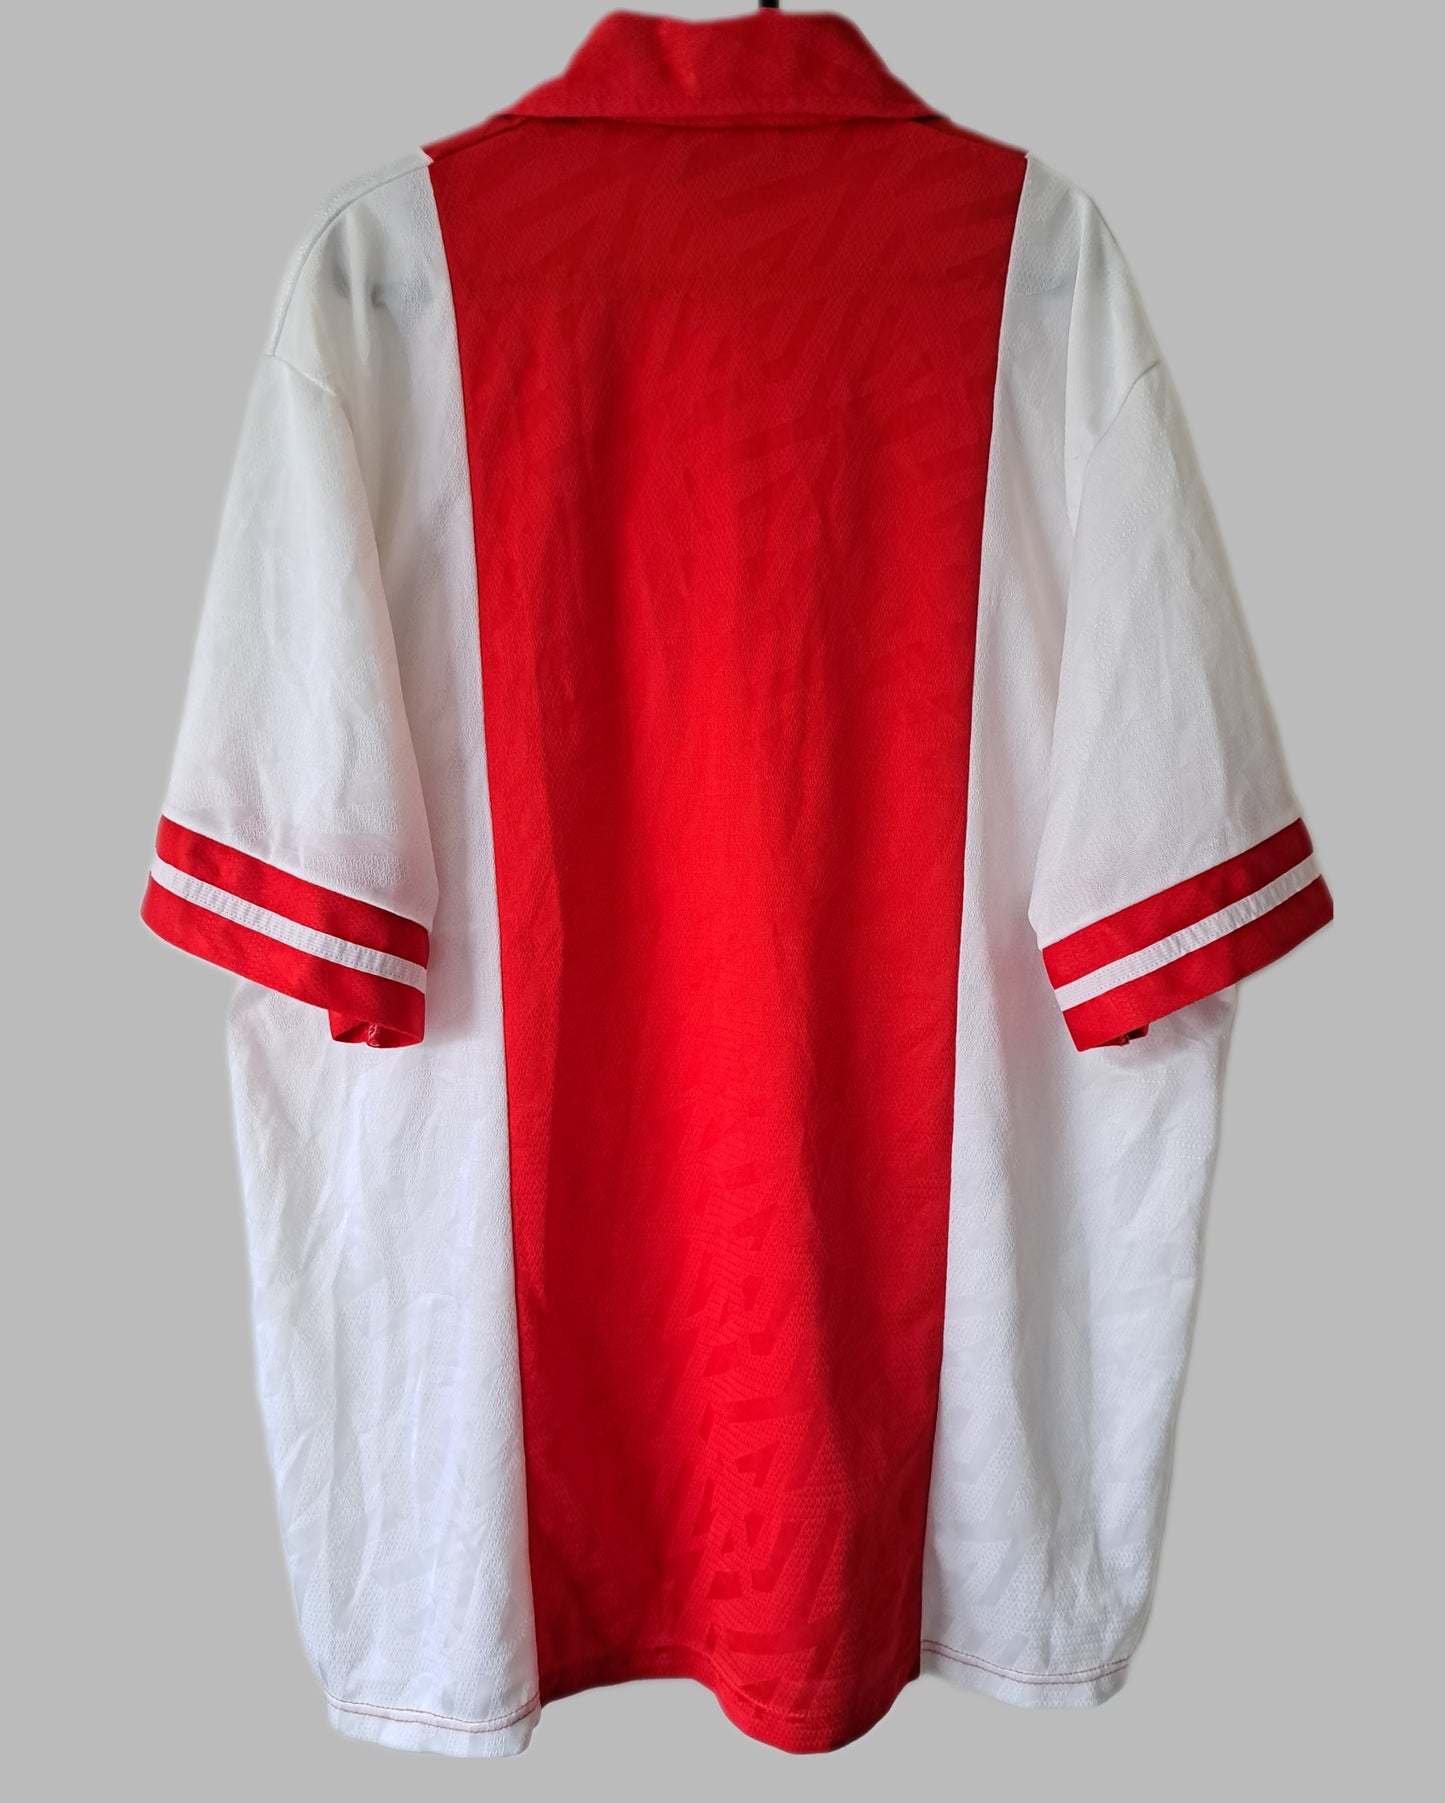 Ajax 1993-94 Home Shirt